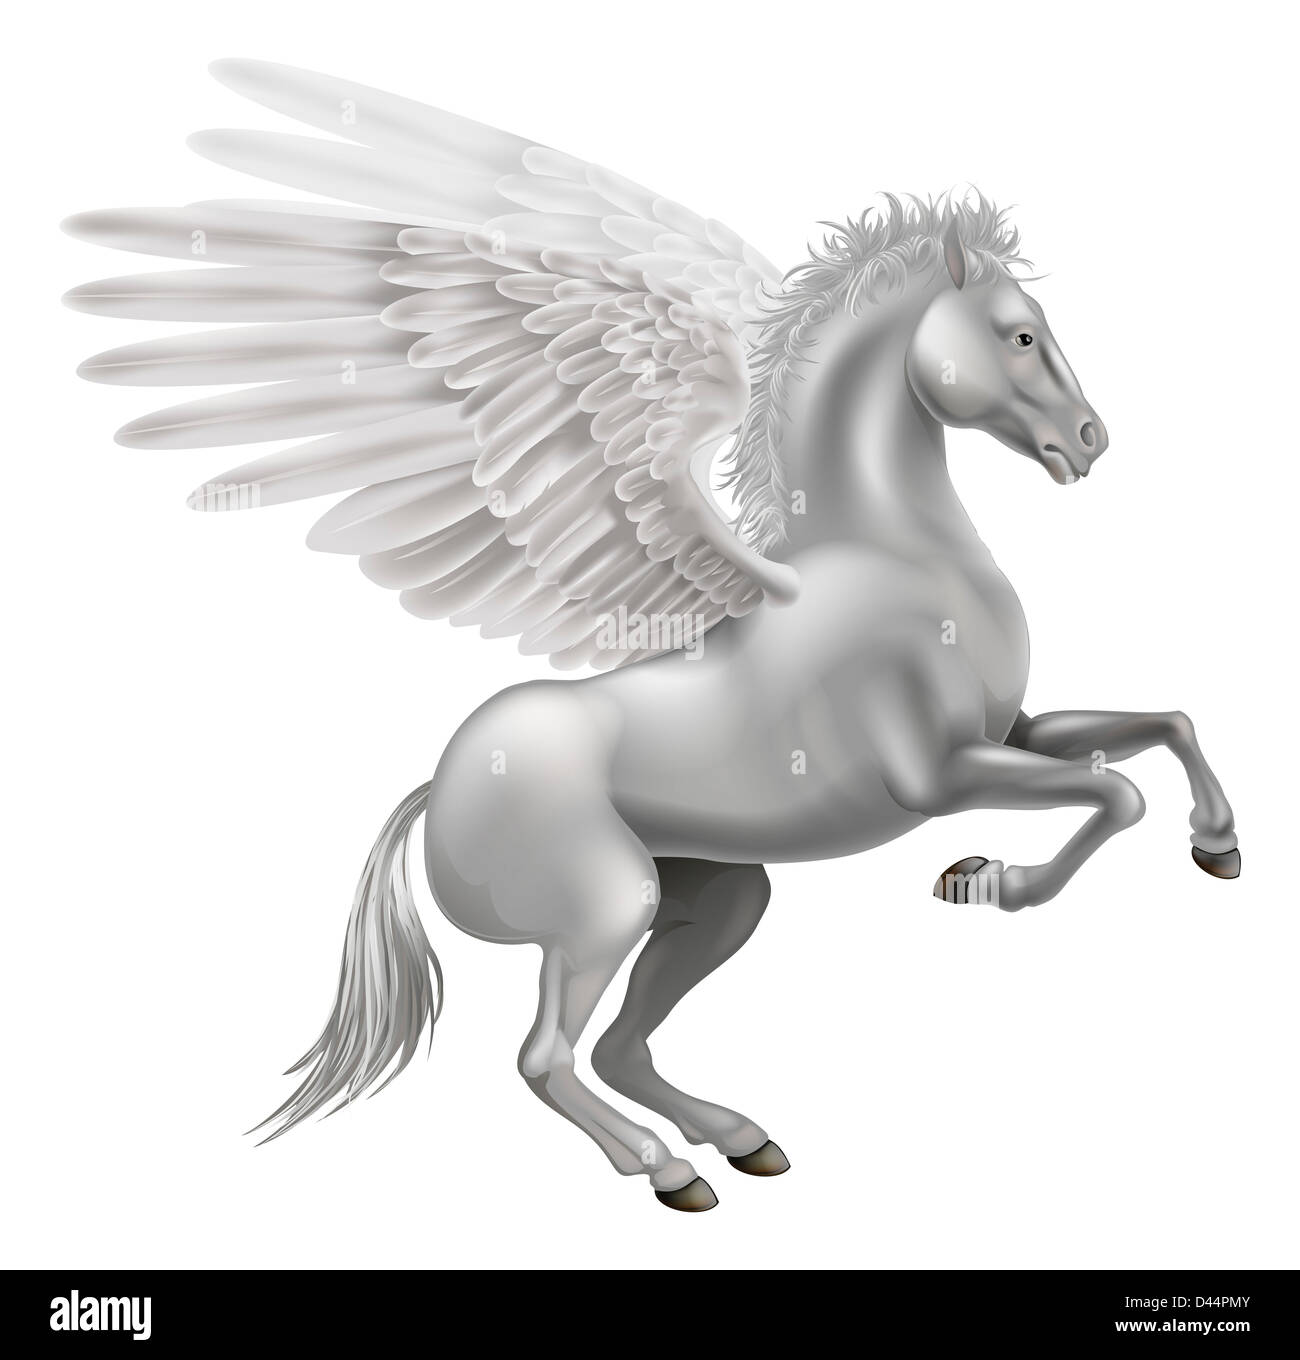 Ilustración del legendario caballo alado de la mitología griega, Pegasus Foto de stock